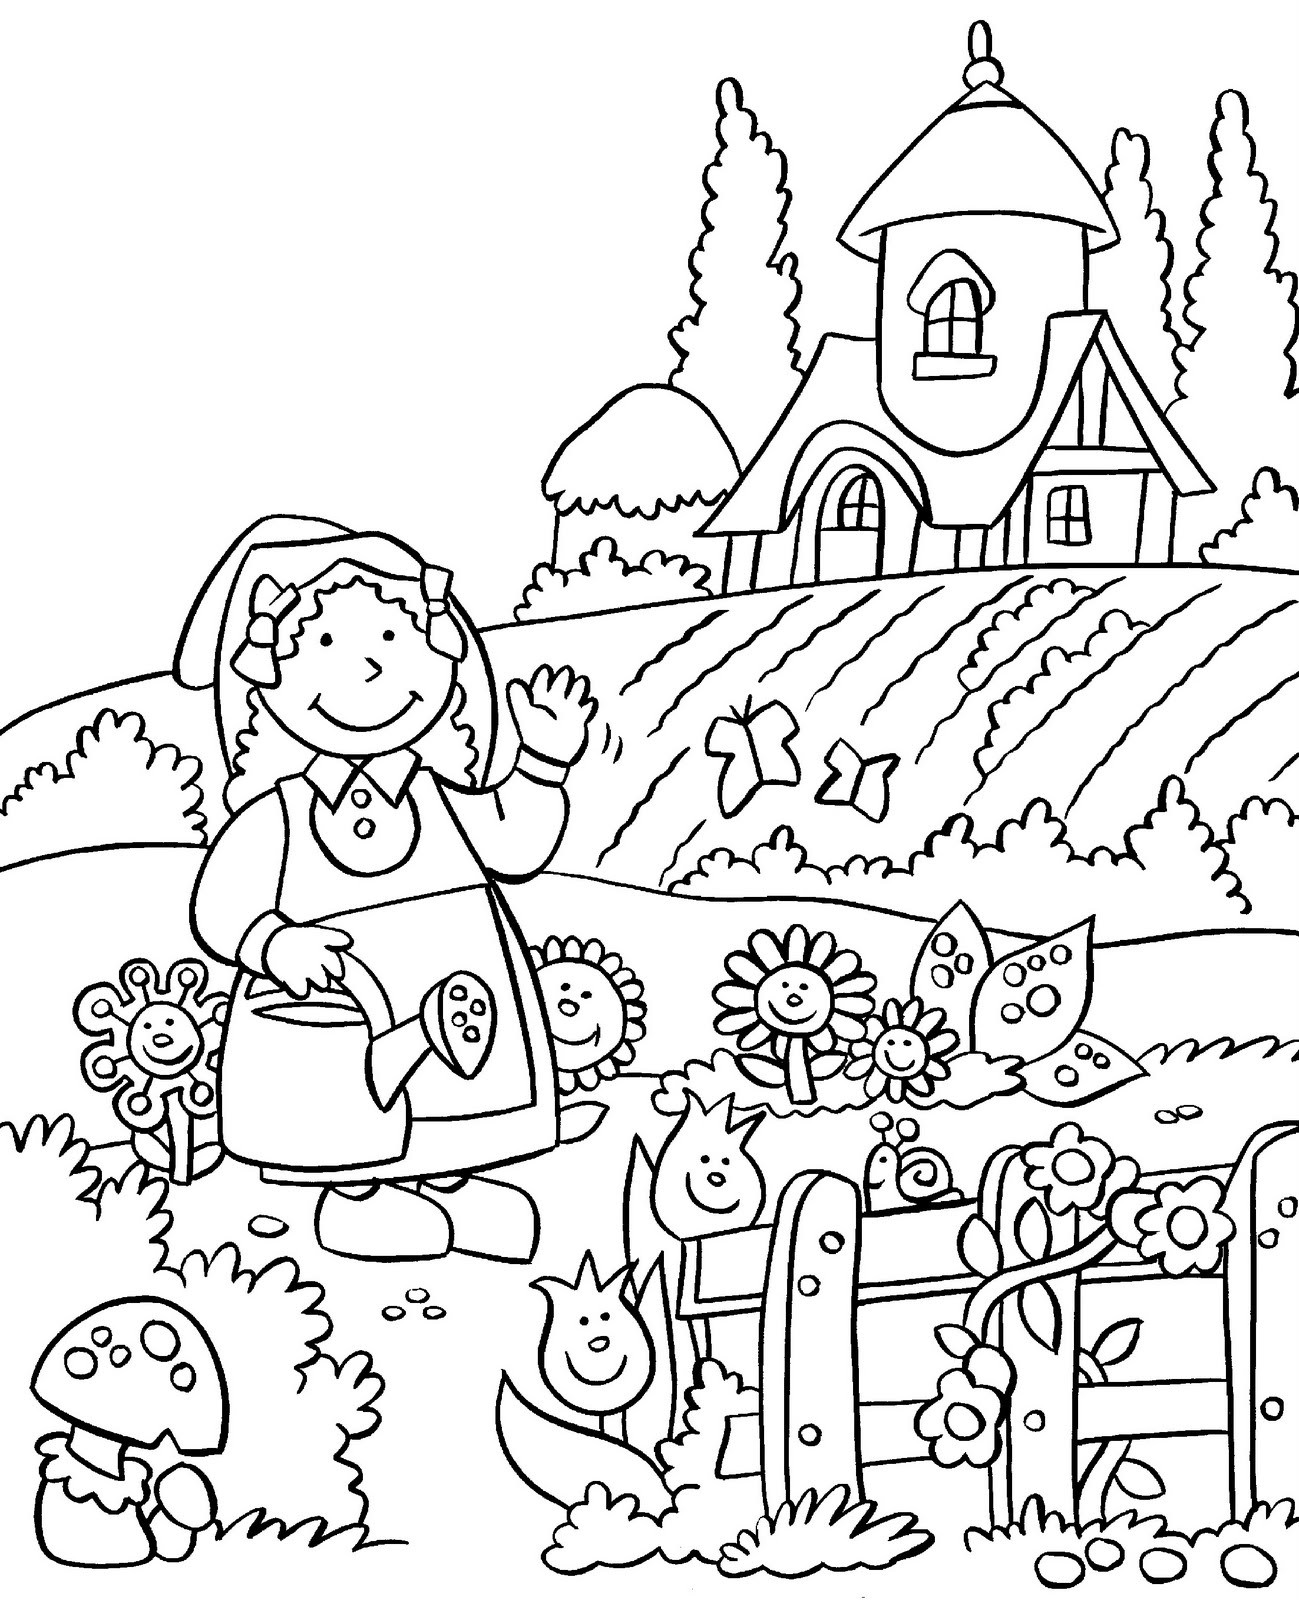 Gaden Week Preschool Coloring Sheets
 Gardening Coloring Pages Best Coloring Pages For Kids